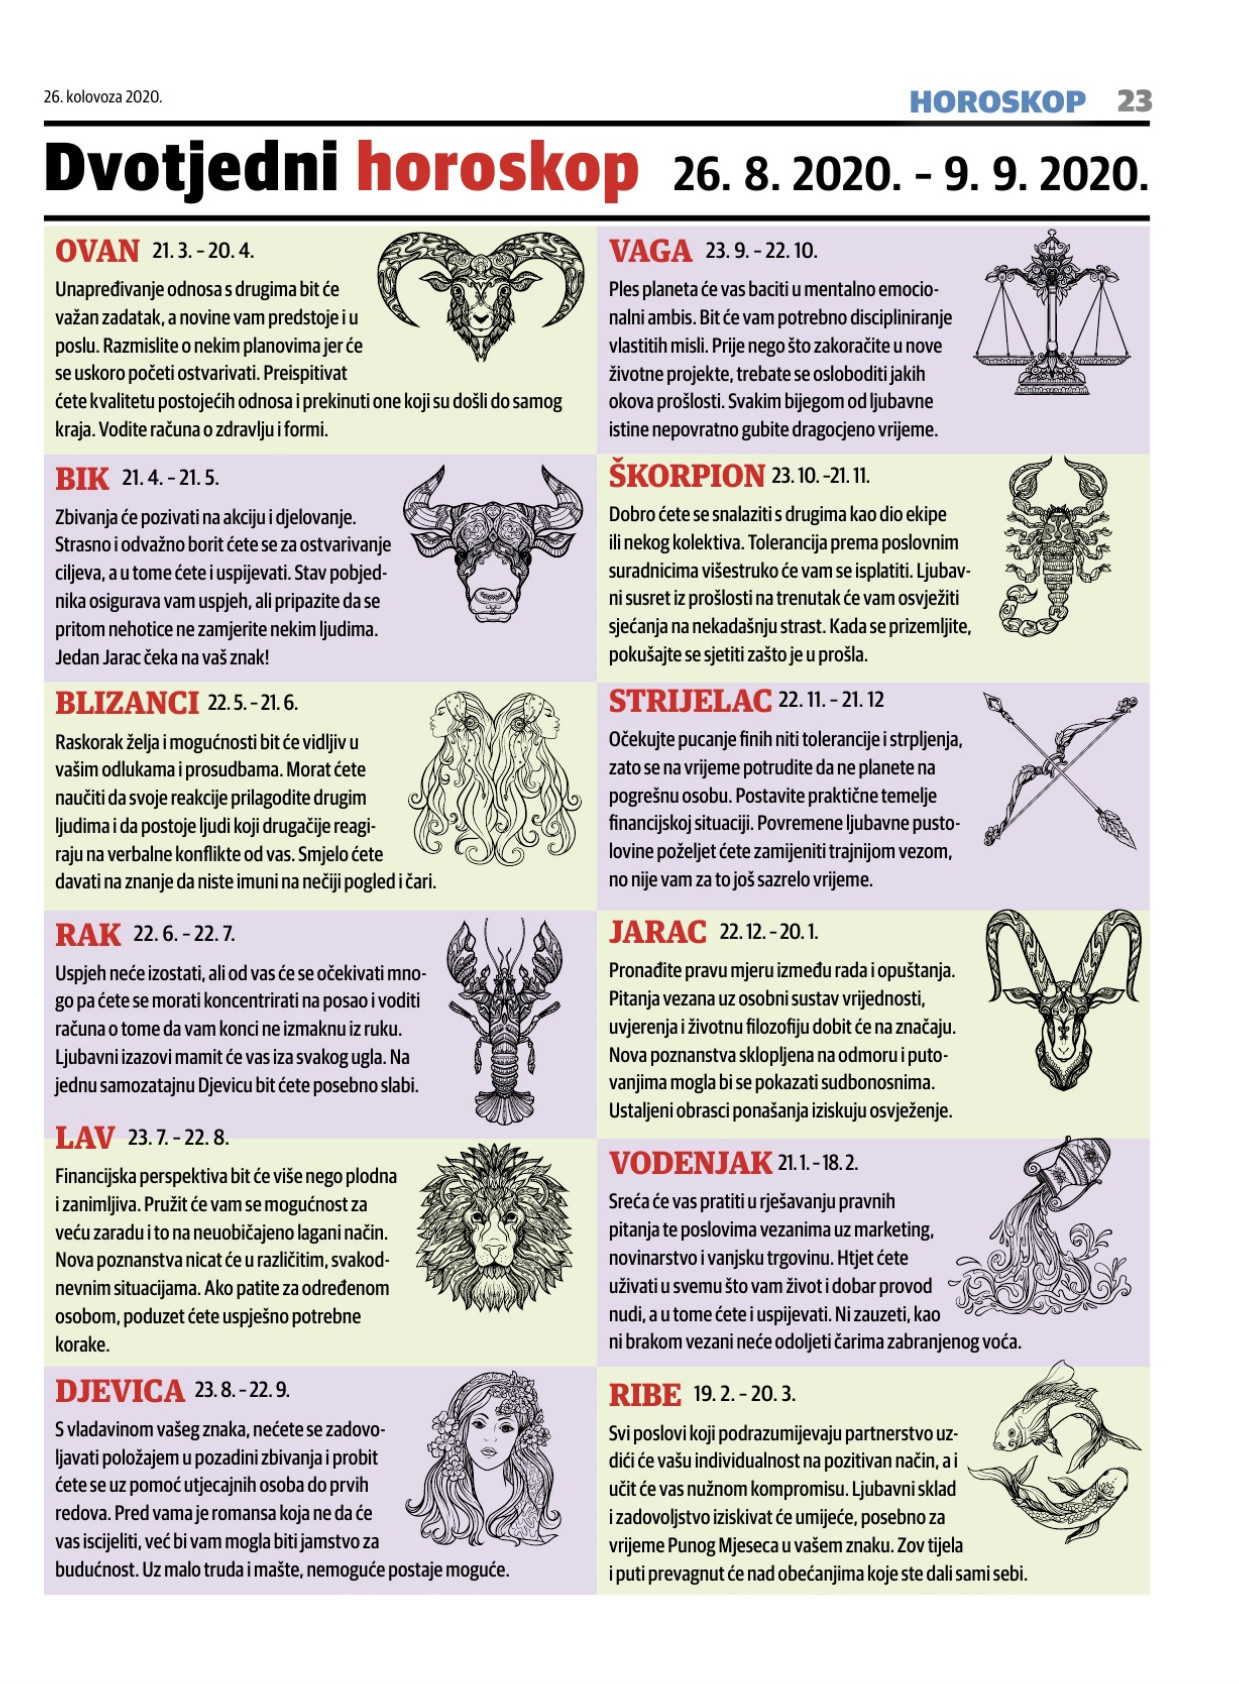 Horoskop i jarac djevica ljubavni Bik, Devica